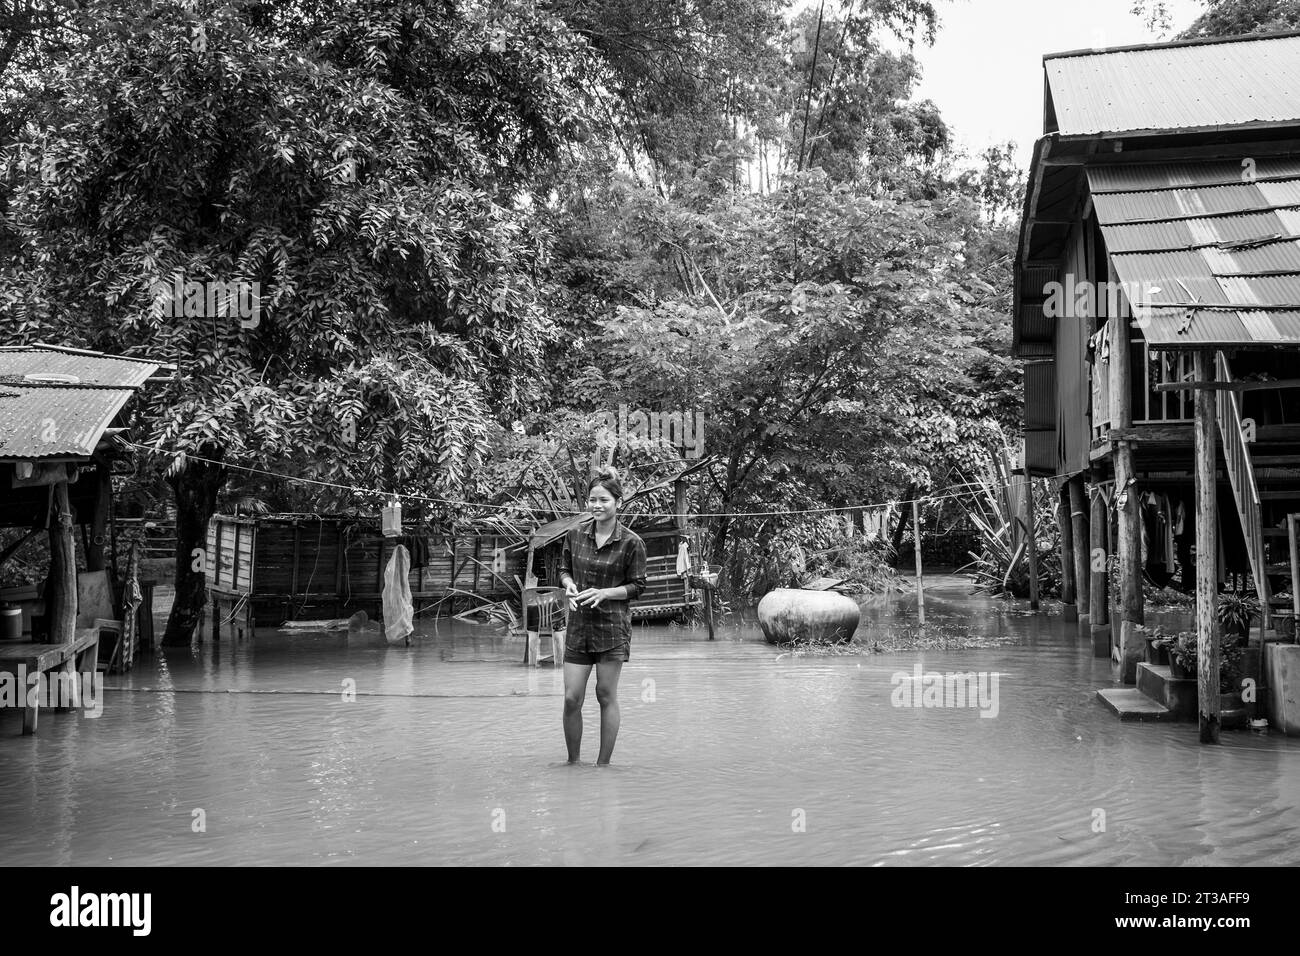 Cambodge, Kampong Phluk, inondations causées par de fortes pluies Banque D'Images